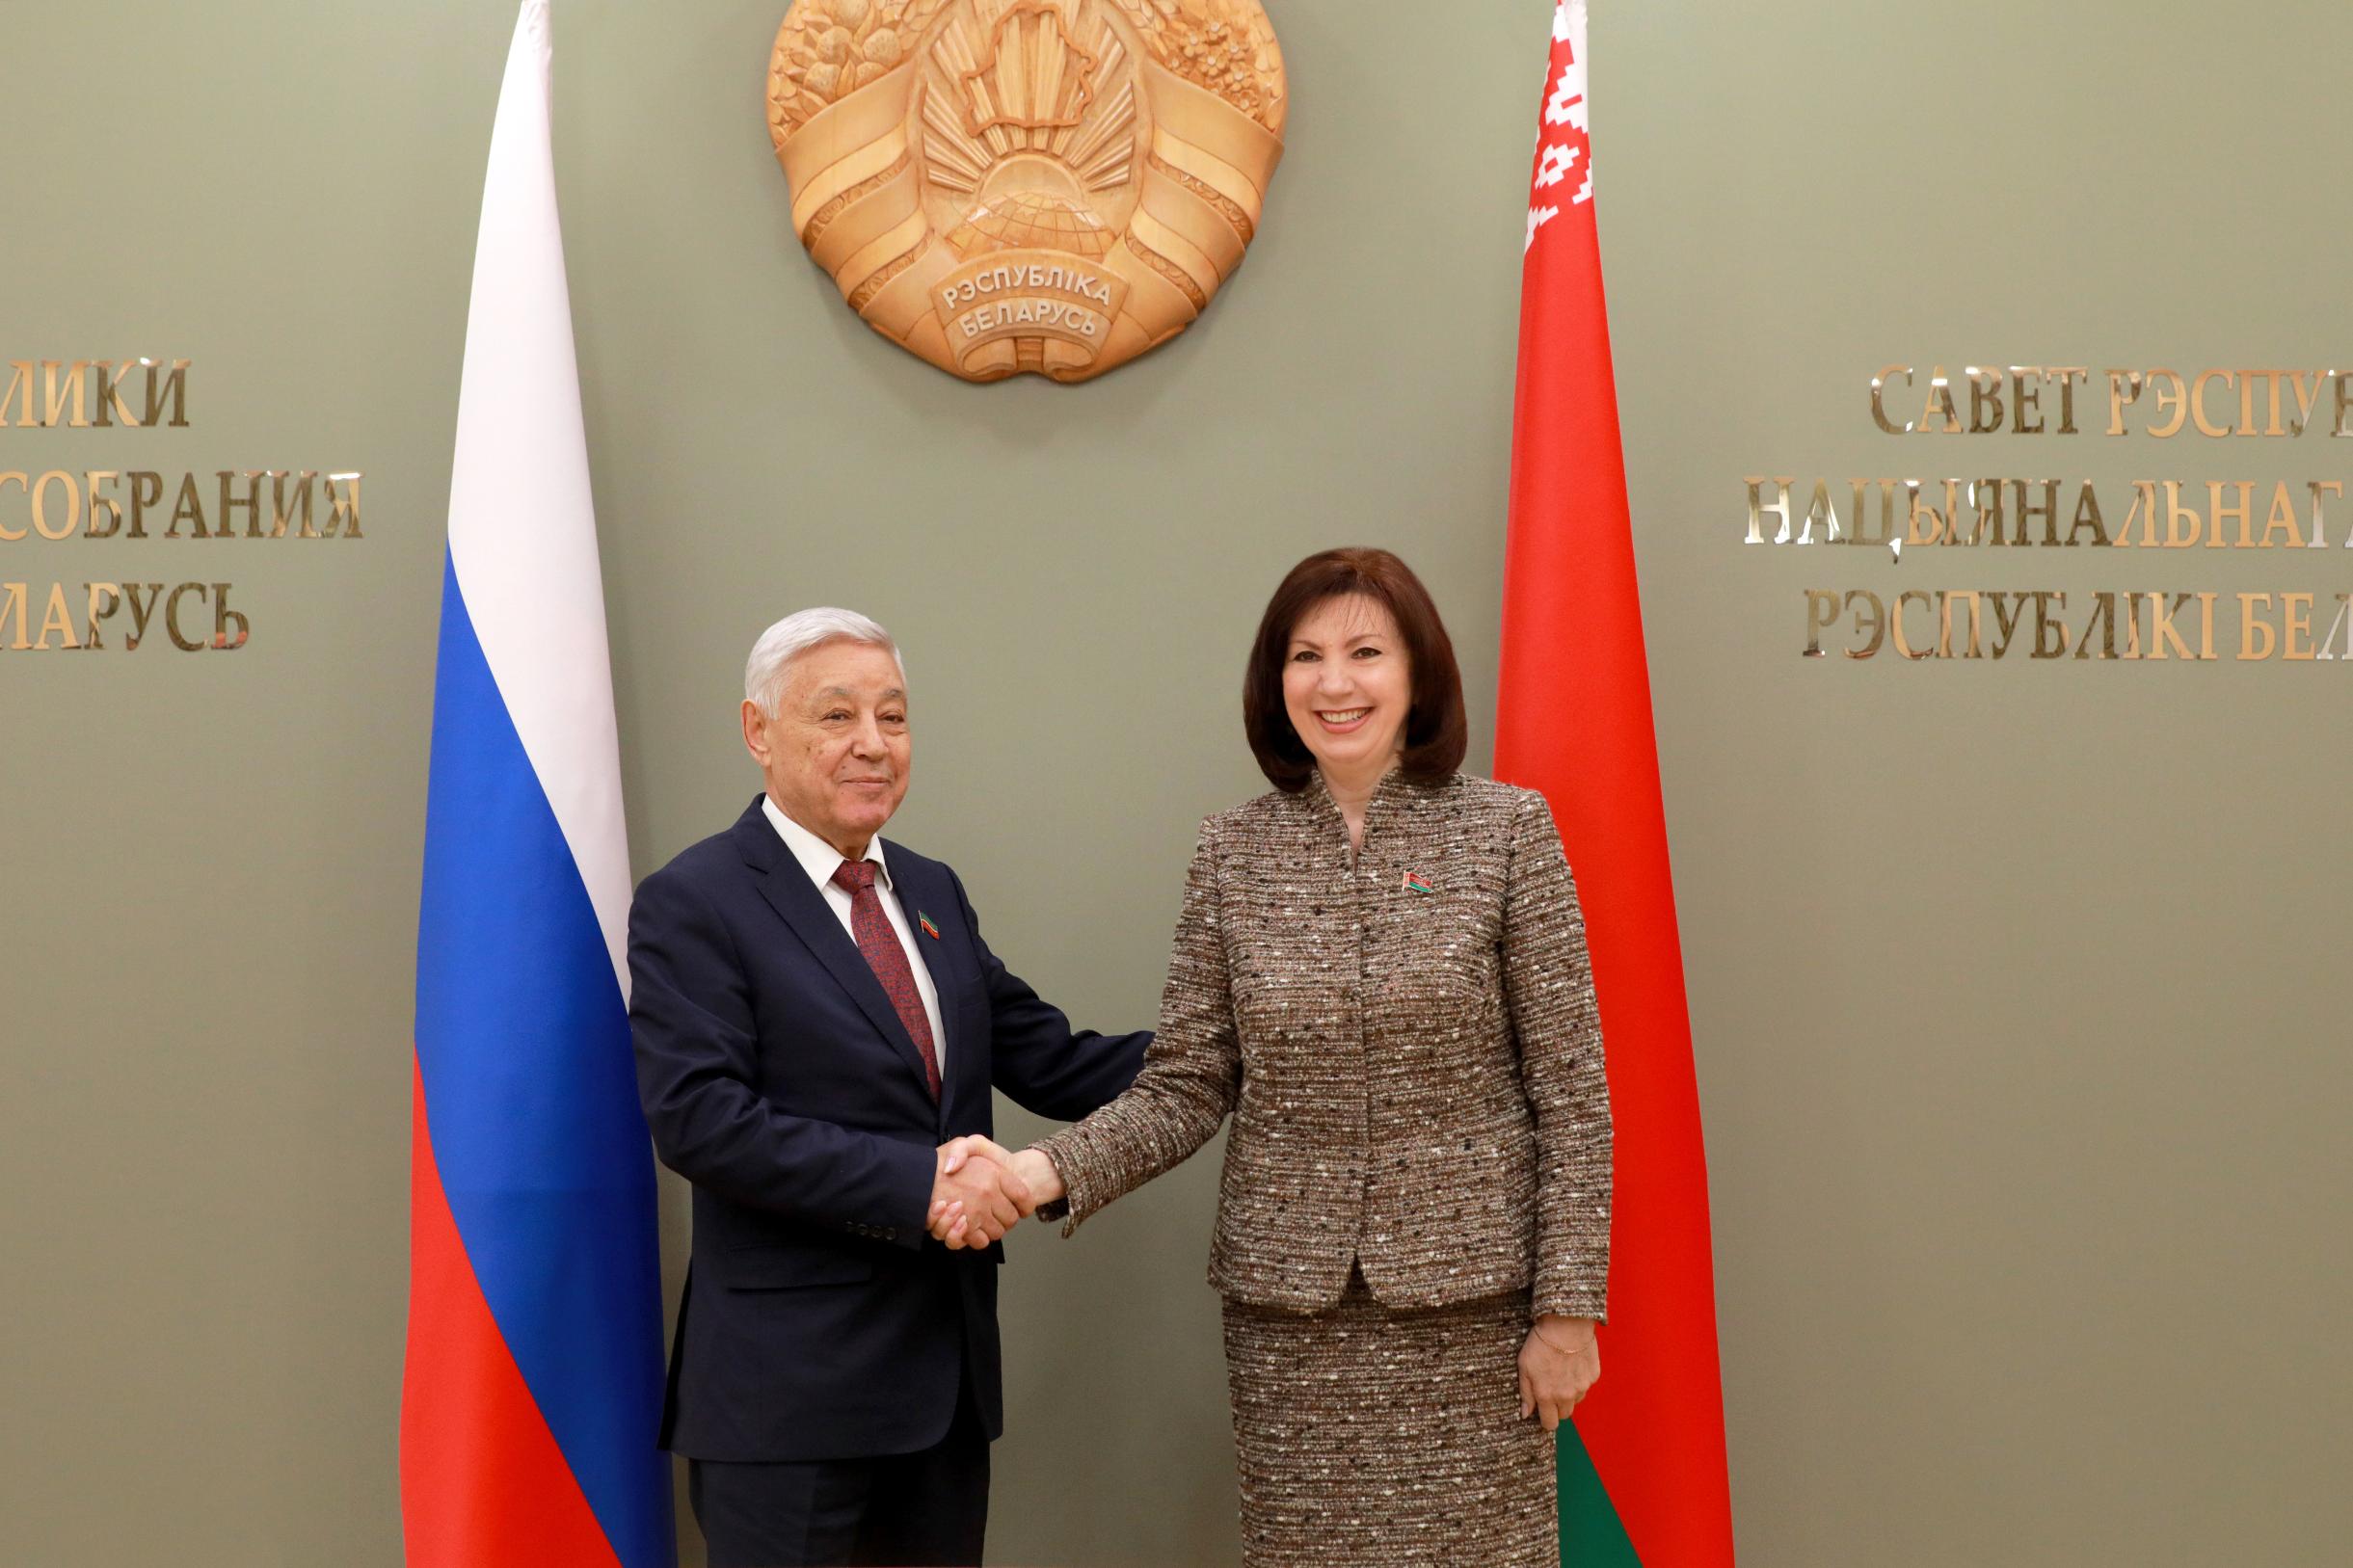 Кочанова: между Беларусью и Татарстаном складываются добрые дружеские отношения